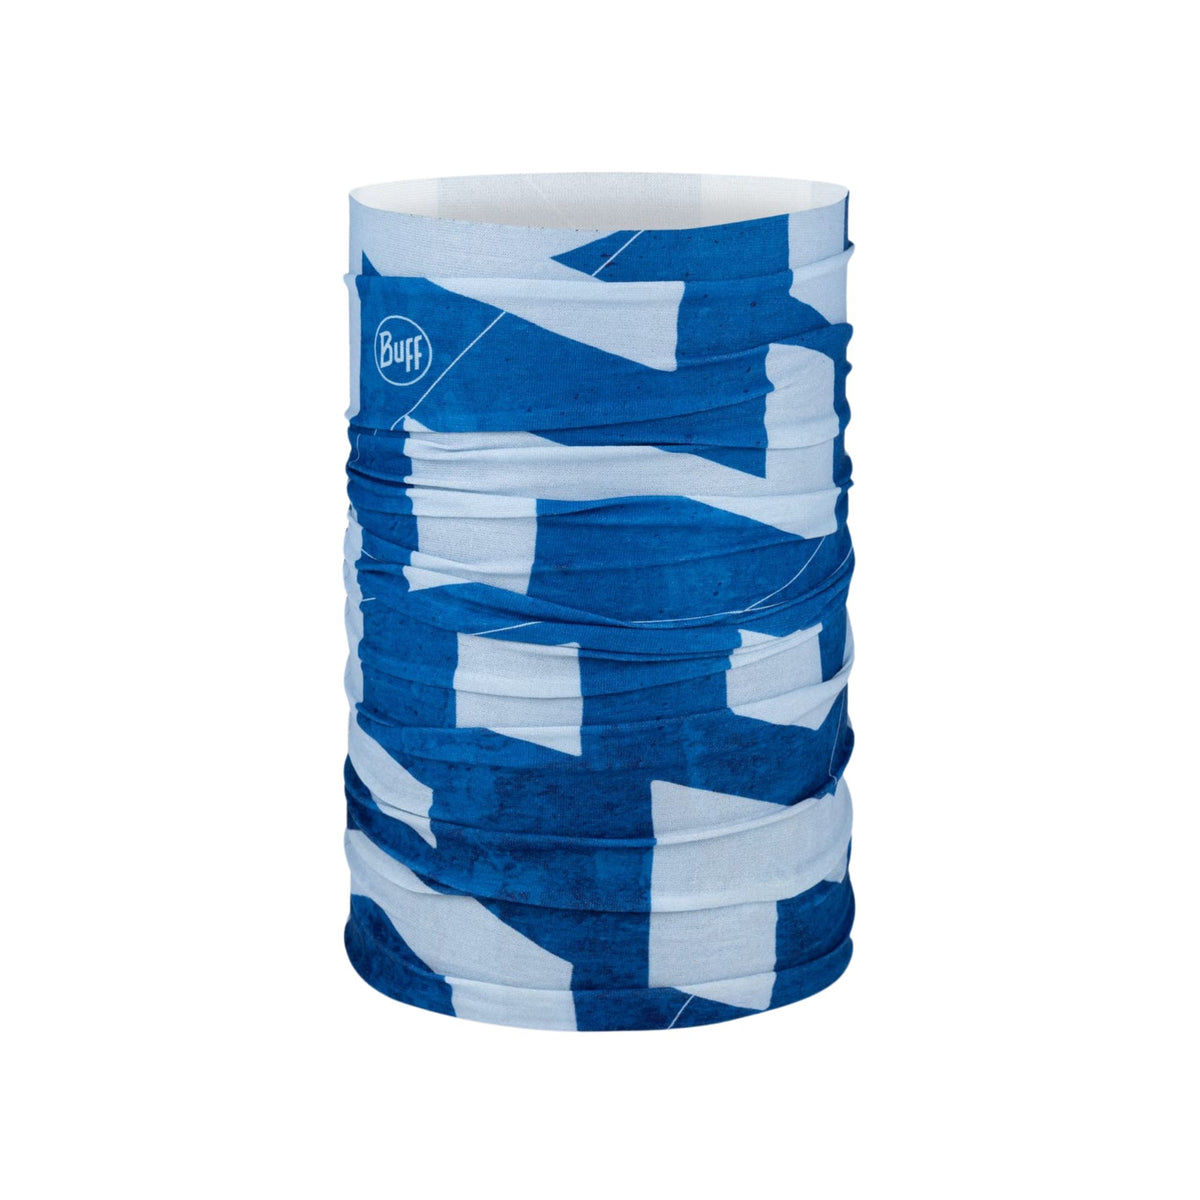 BUFF | COOLNET UV NECKWEAR - AKTIK BLUE - Scaldacollo con protezione solare